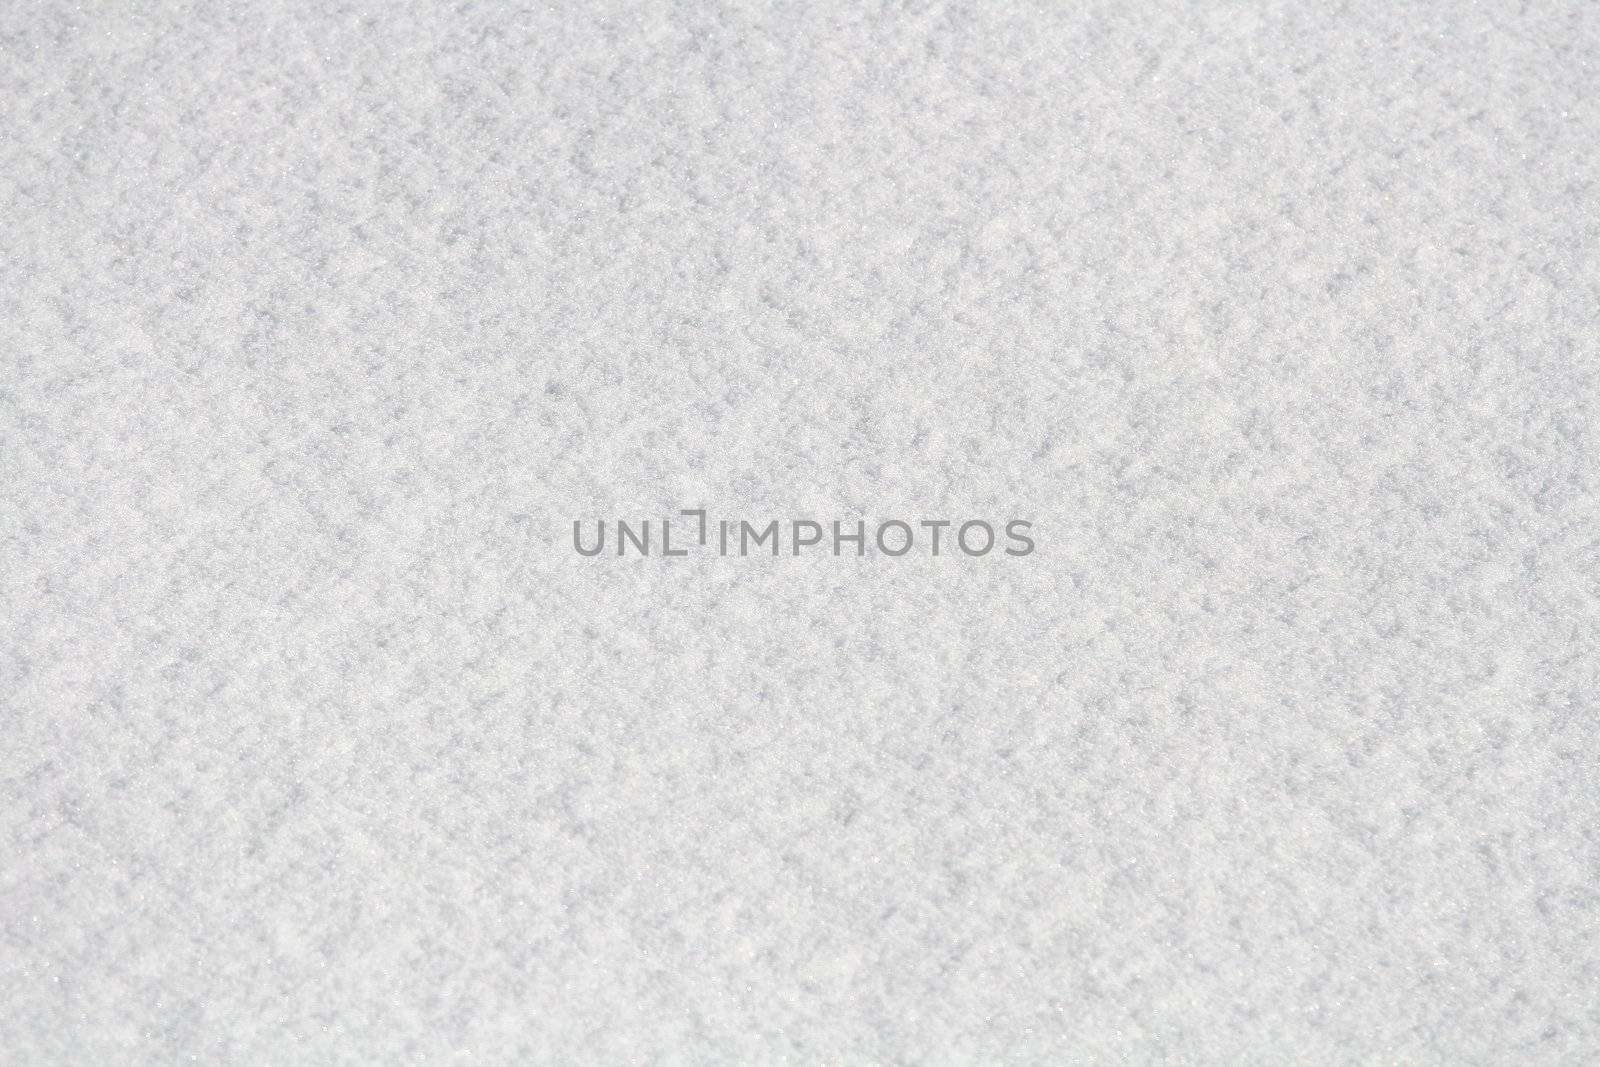 Texture shot on fresh snowflakes